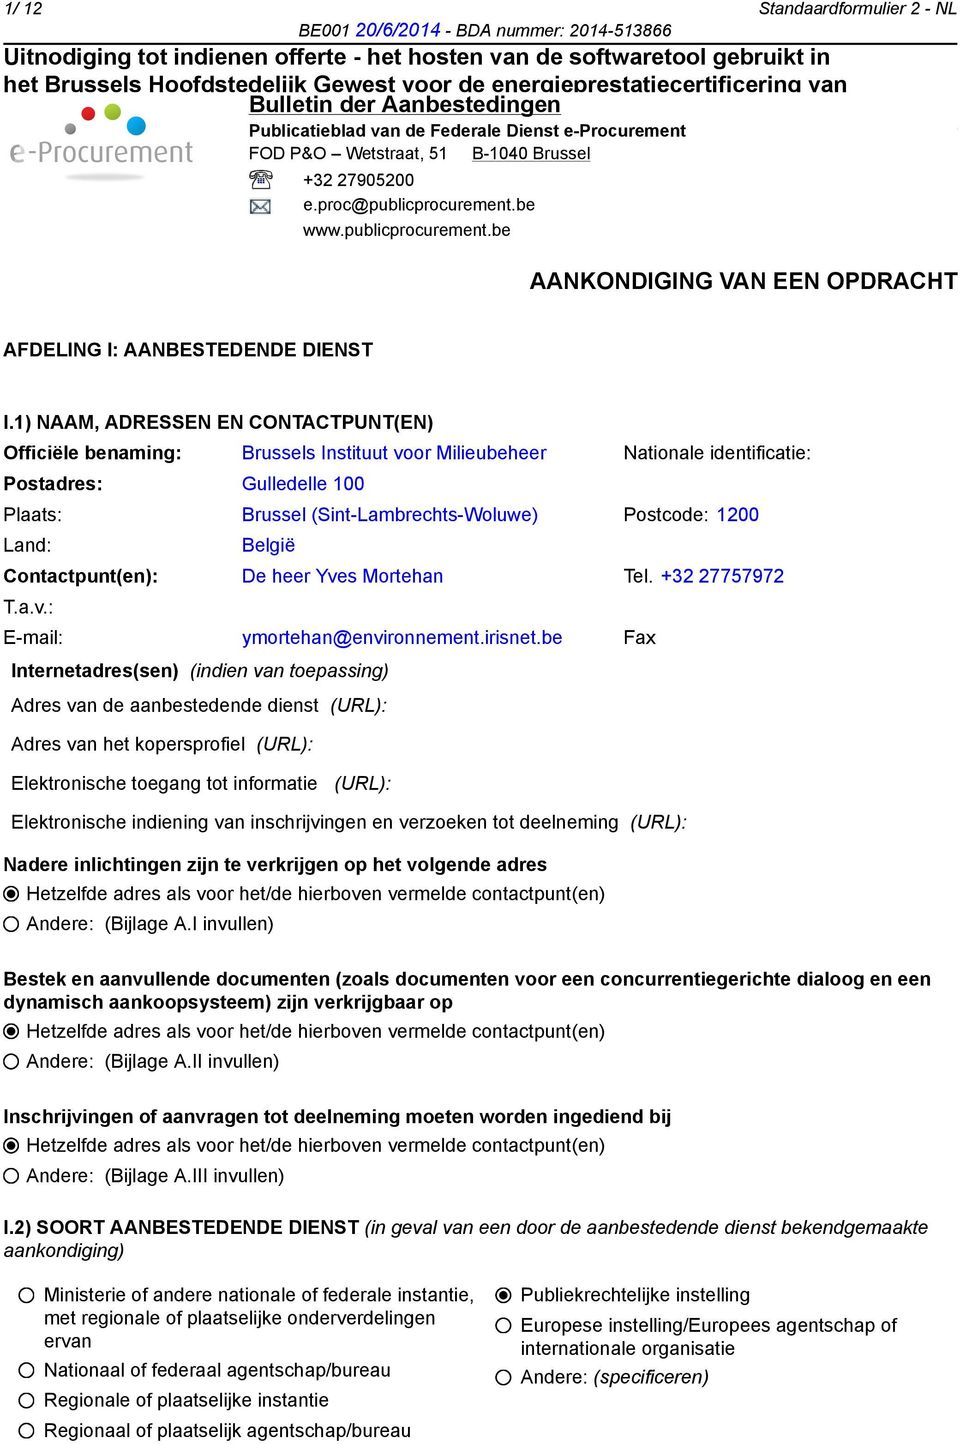 1) NAAM, ADRESSEN EN CONTACTPUNT(EN) Officiële benaming: Brussels Instituut voor Milieubeheer Nationale identificatie: Postadres: Gulledelle 100 Plaats: Brussel (Sint-Lambrechts-Woluwe) Postcode: